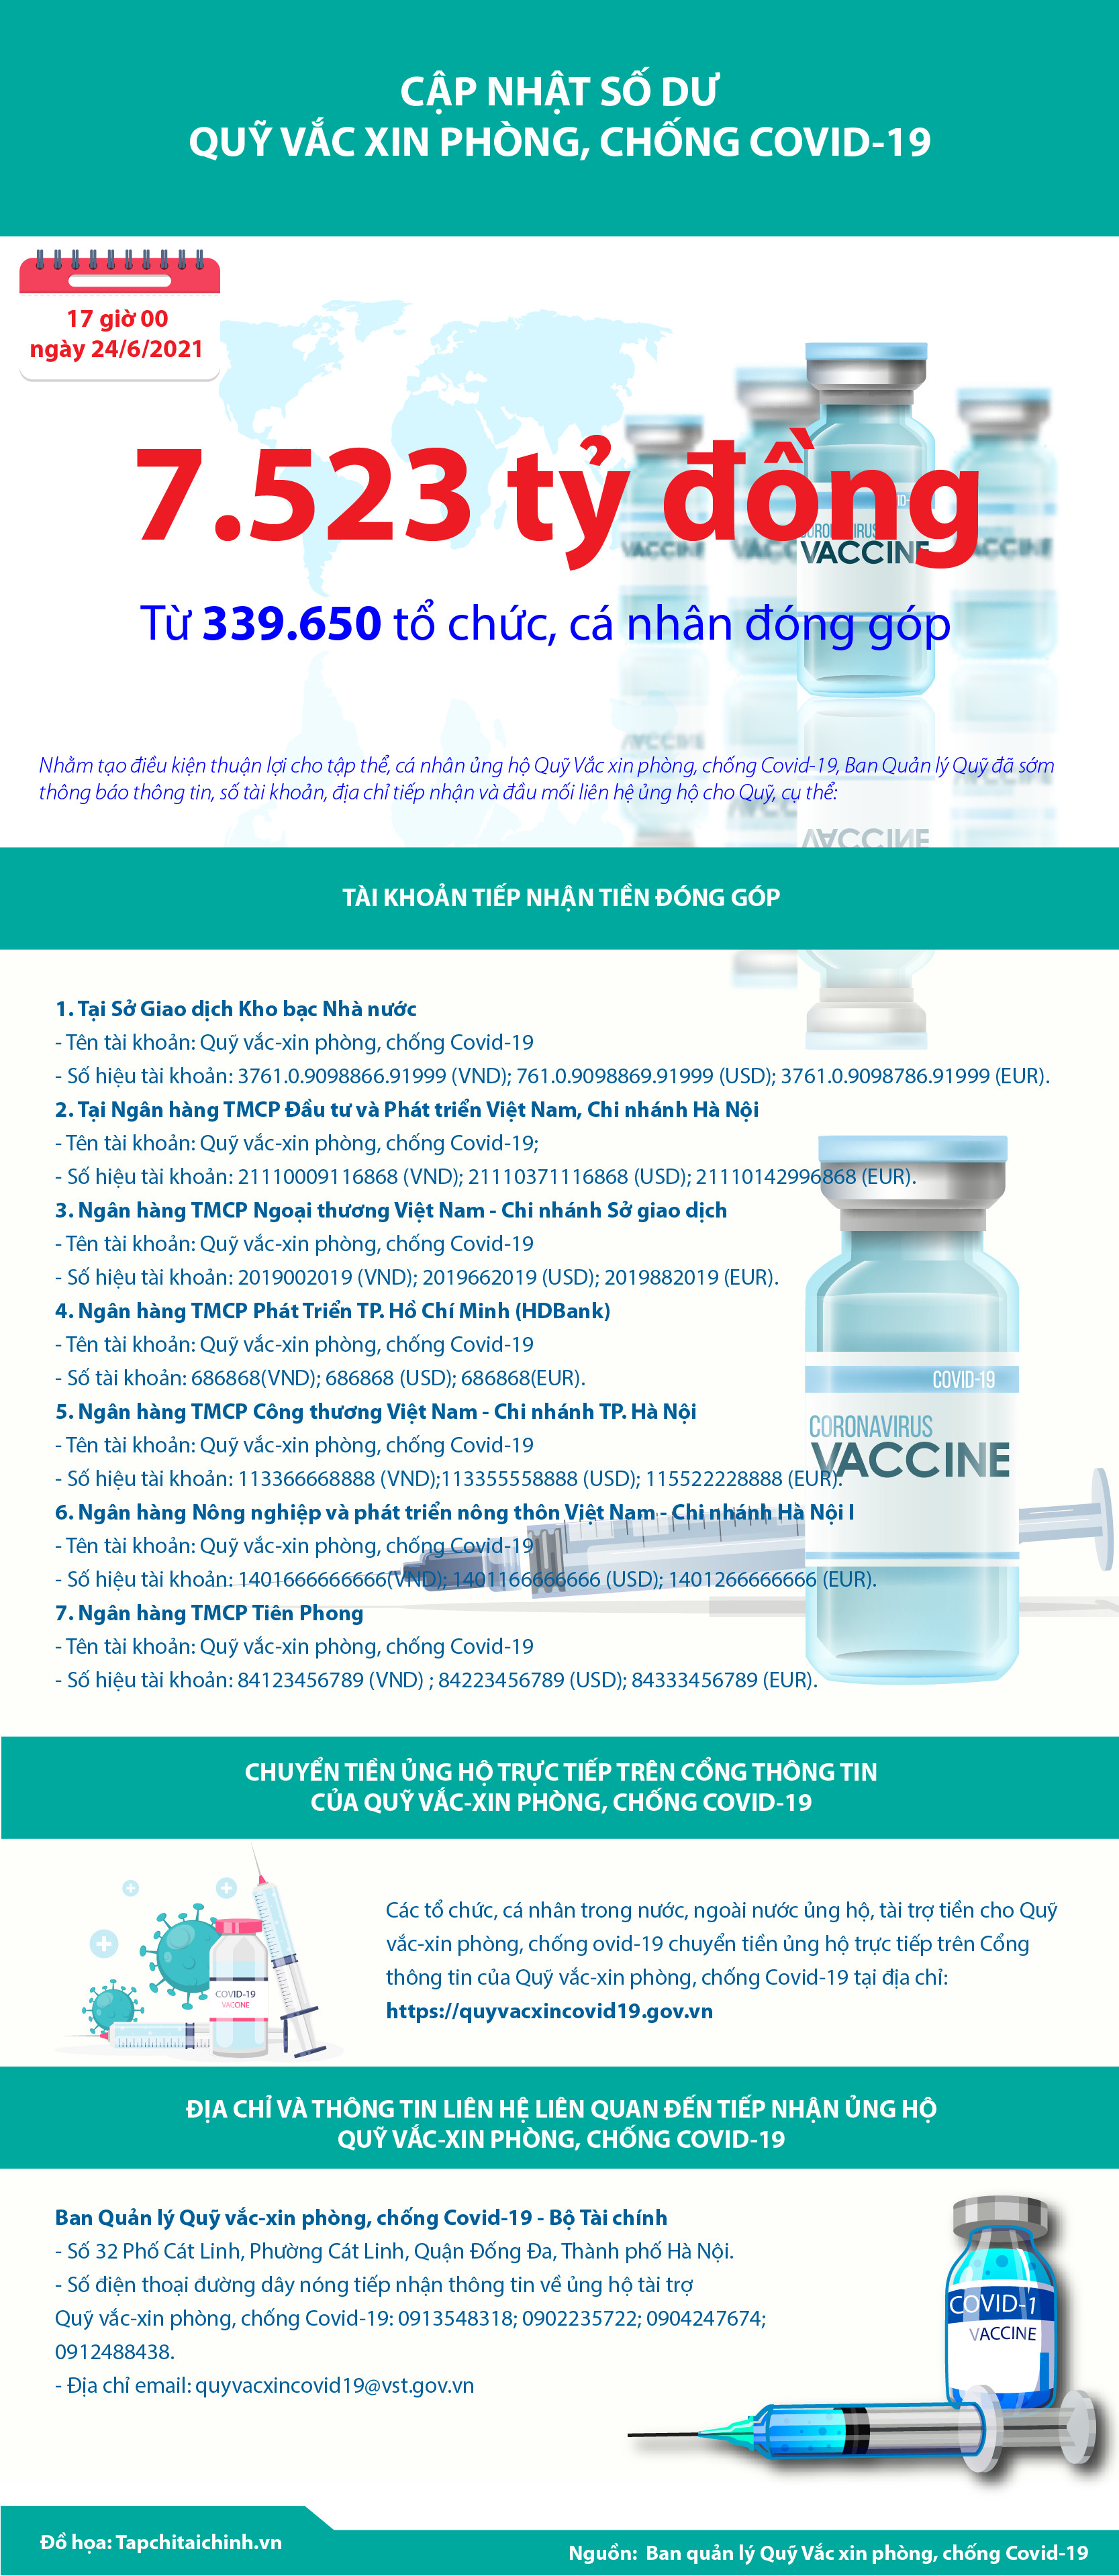 [Infographics] Quỹ Vắc xin phòng, chống Covid-19 đã tiếp nhận ủng hộ 7.523 tỷ đồng - Ảnh 1